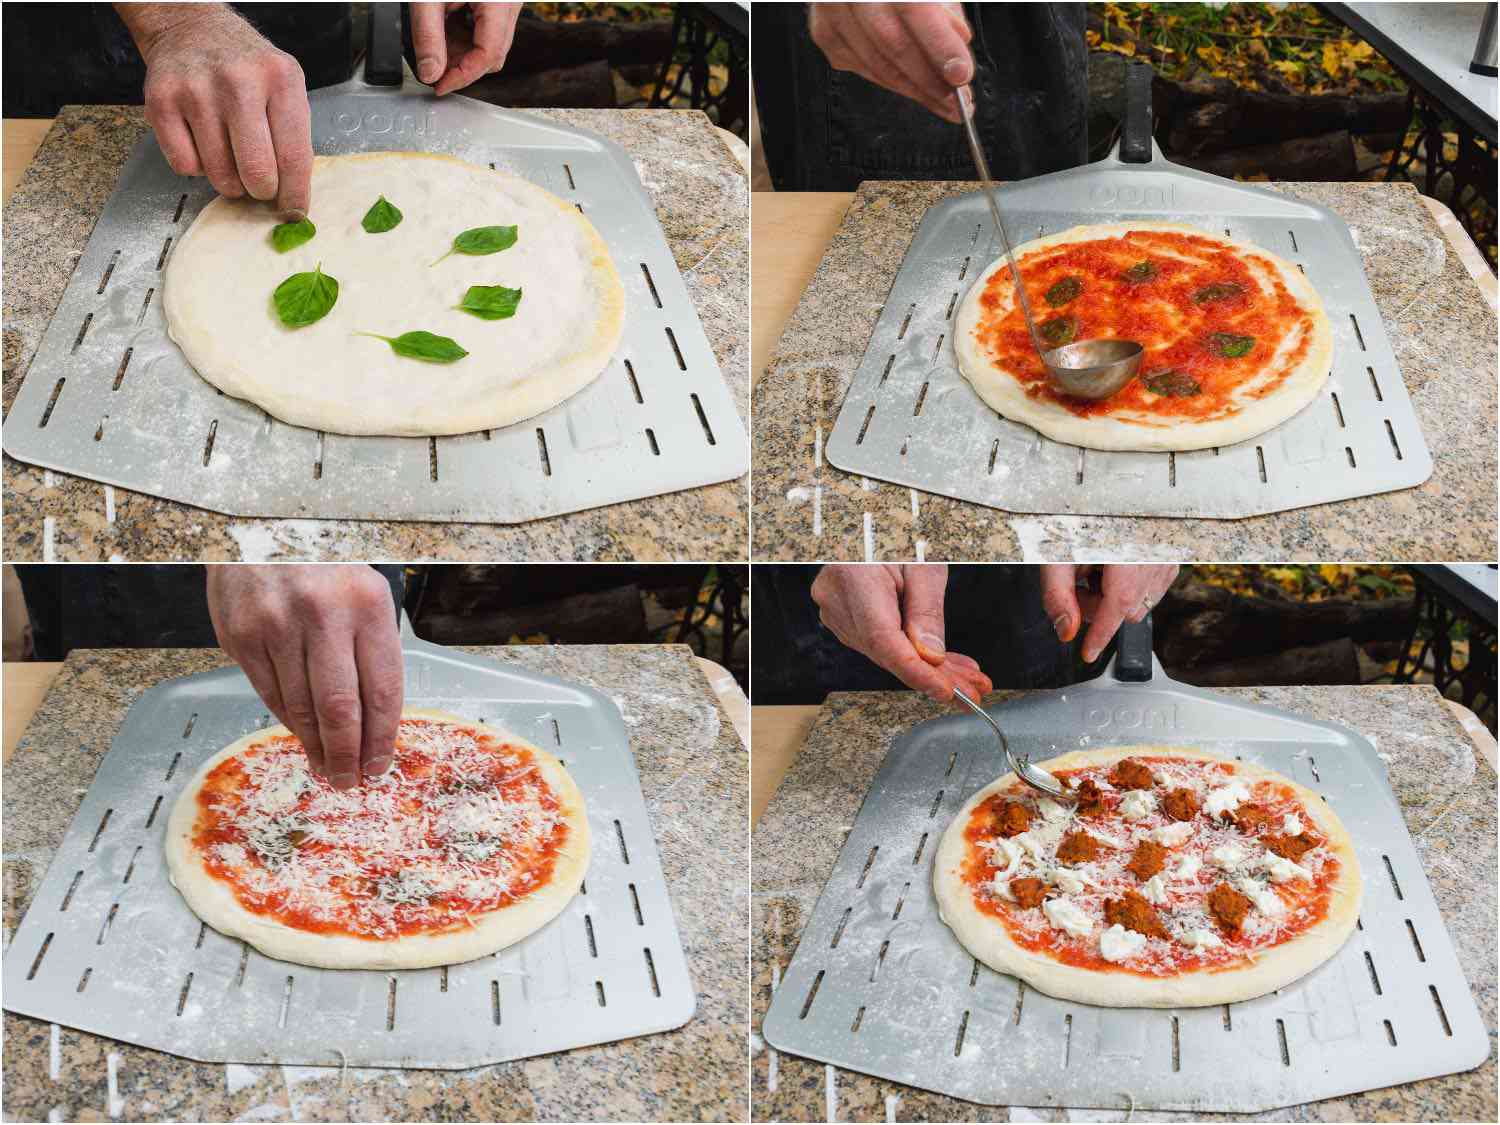 用罗勒、番茄酱、帕尔马干酪、马苏里拉奶酪和nduja装饰披萨的拼贴画